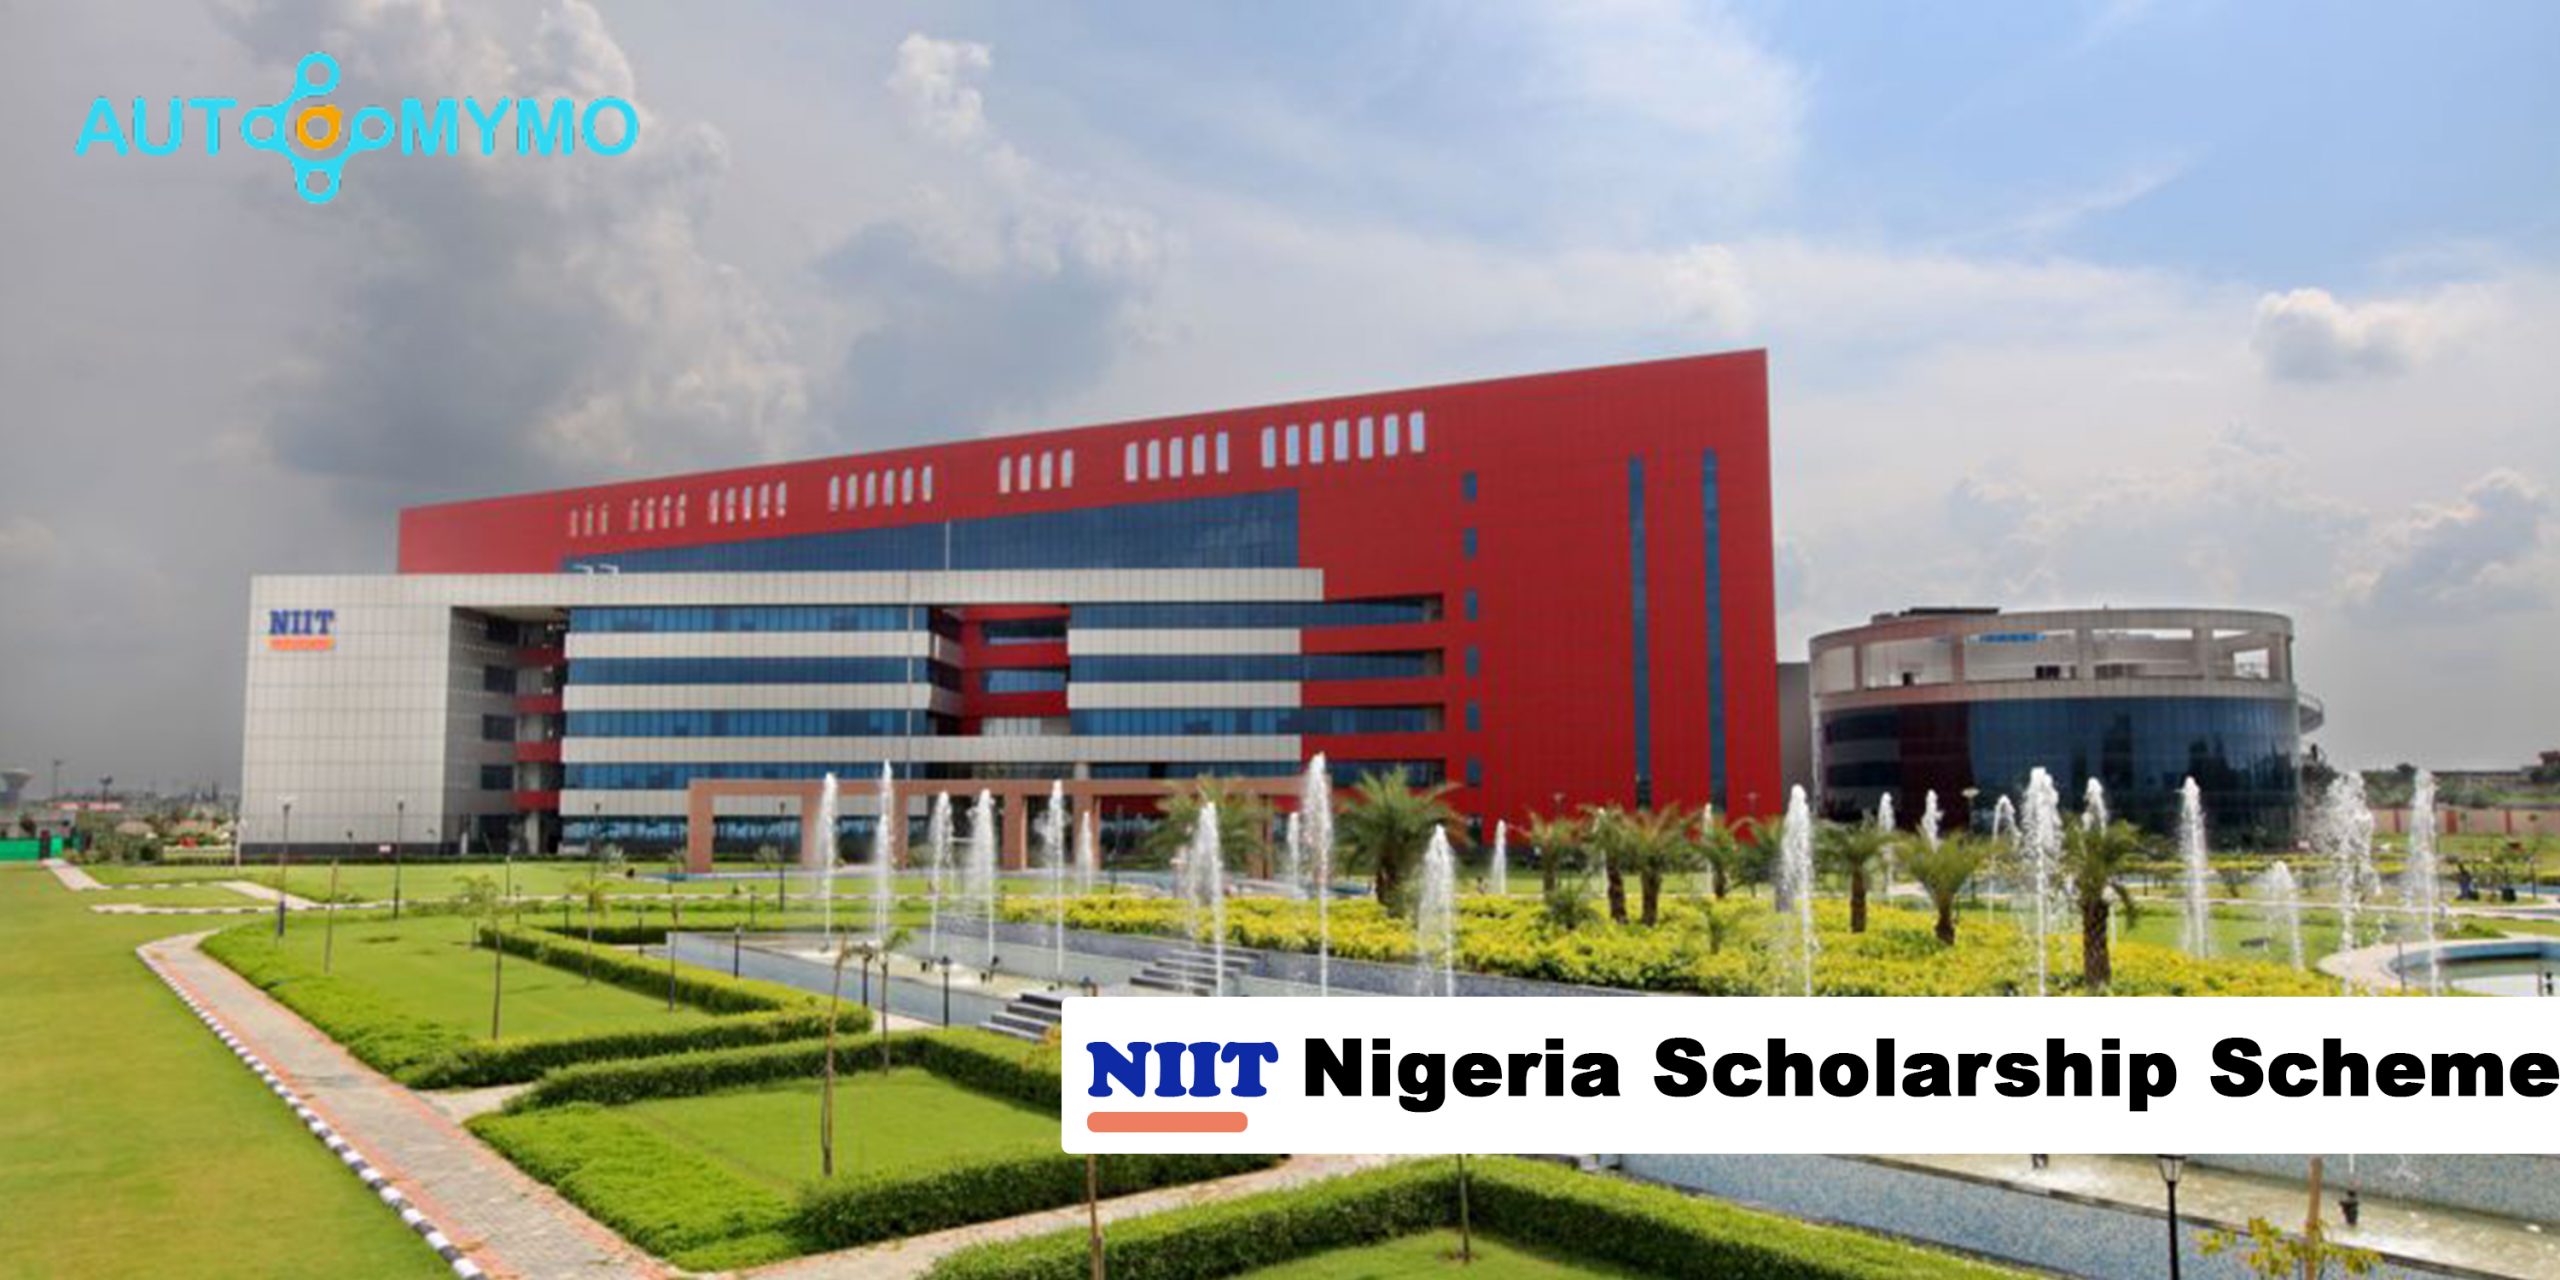 NIIT Nigeria Scholarship Scheme